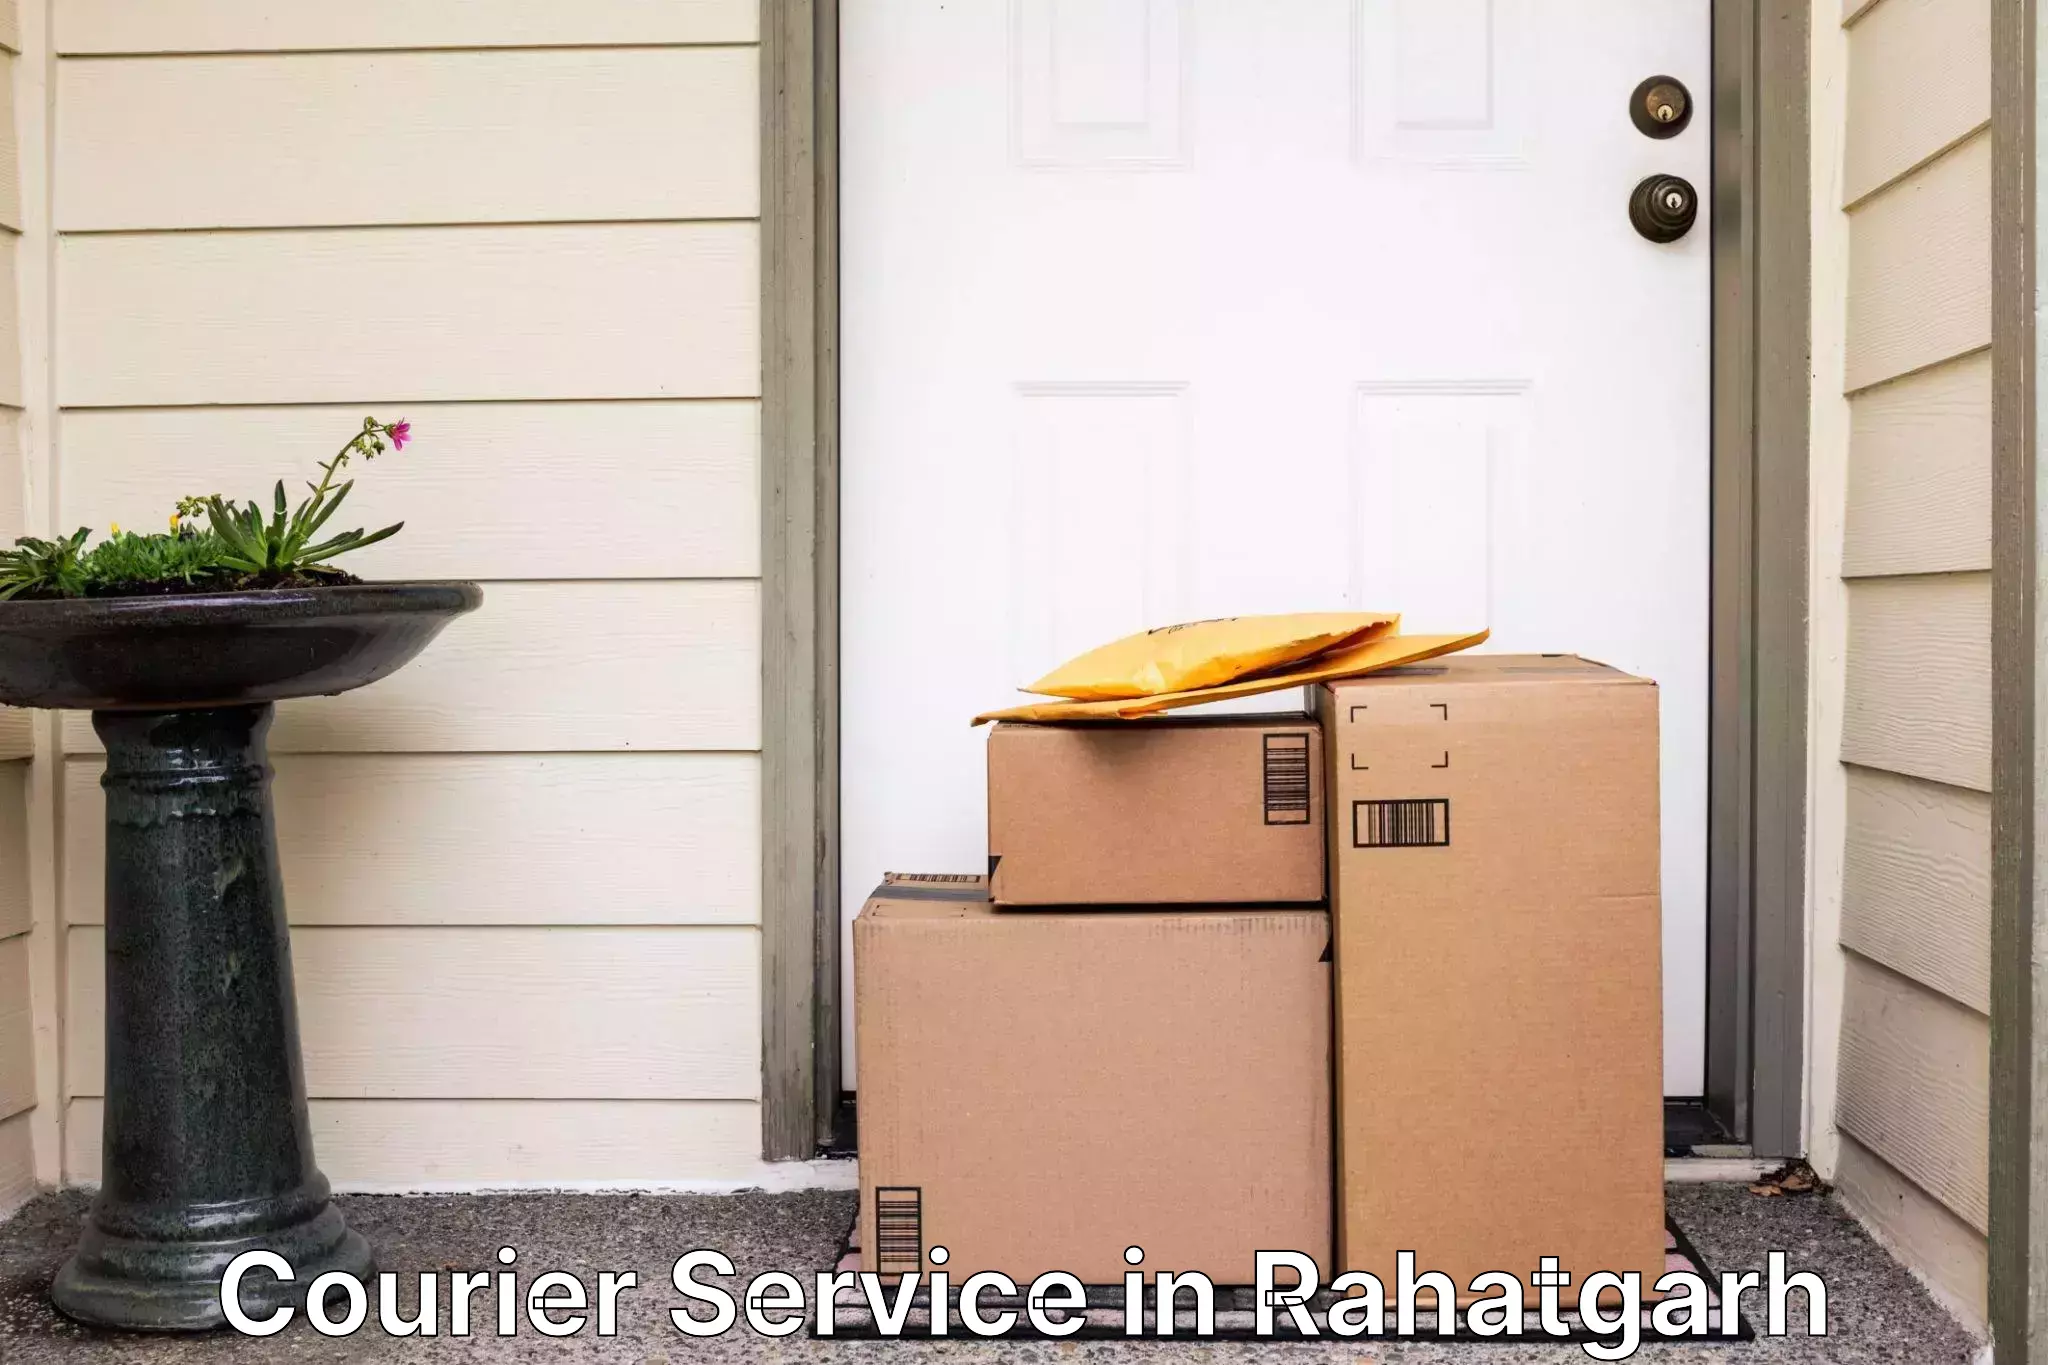 Bulk courier orders in Rahatgarh